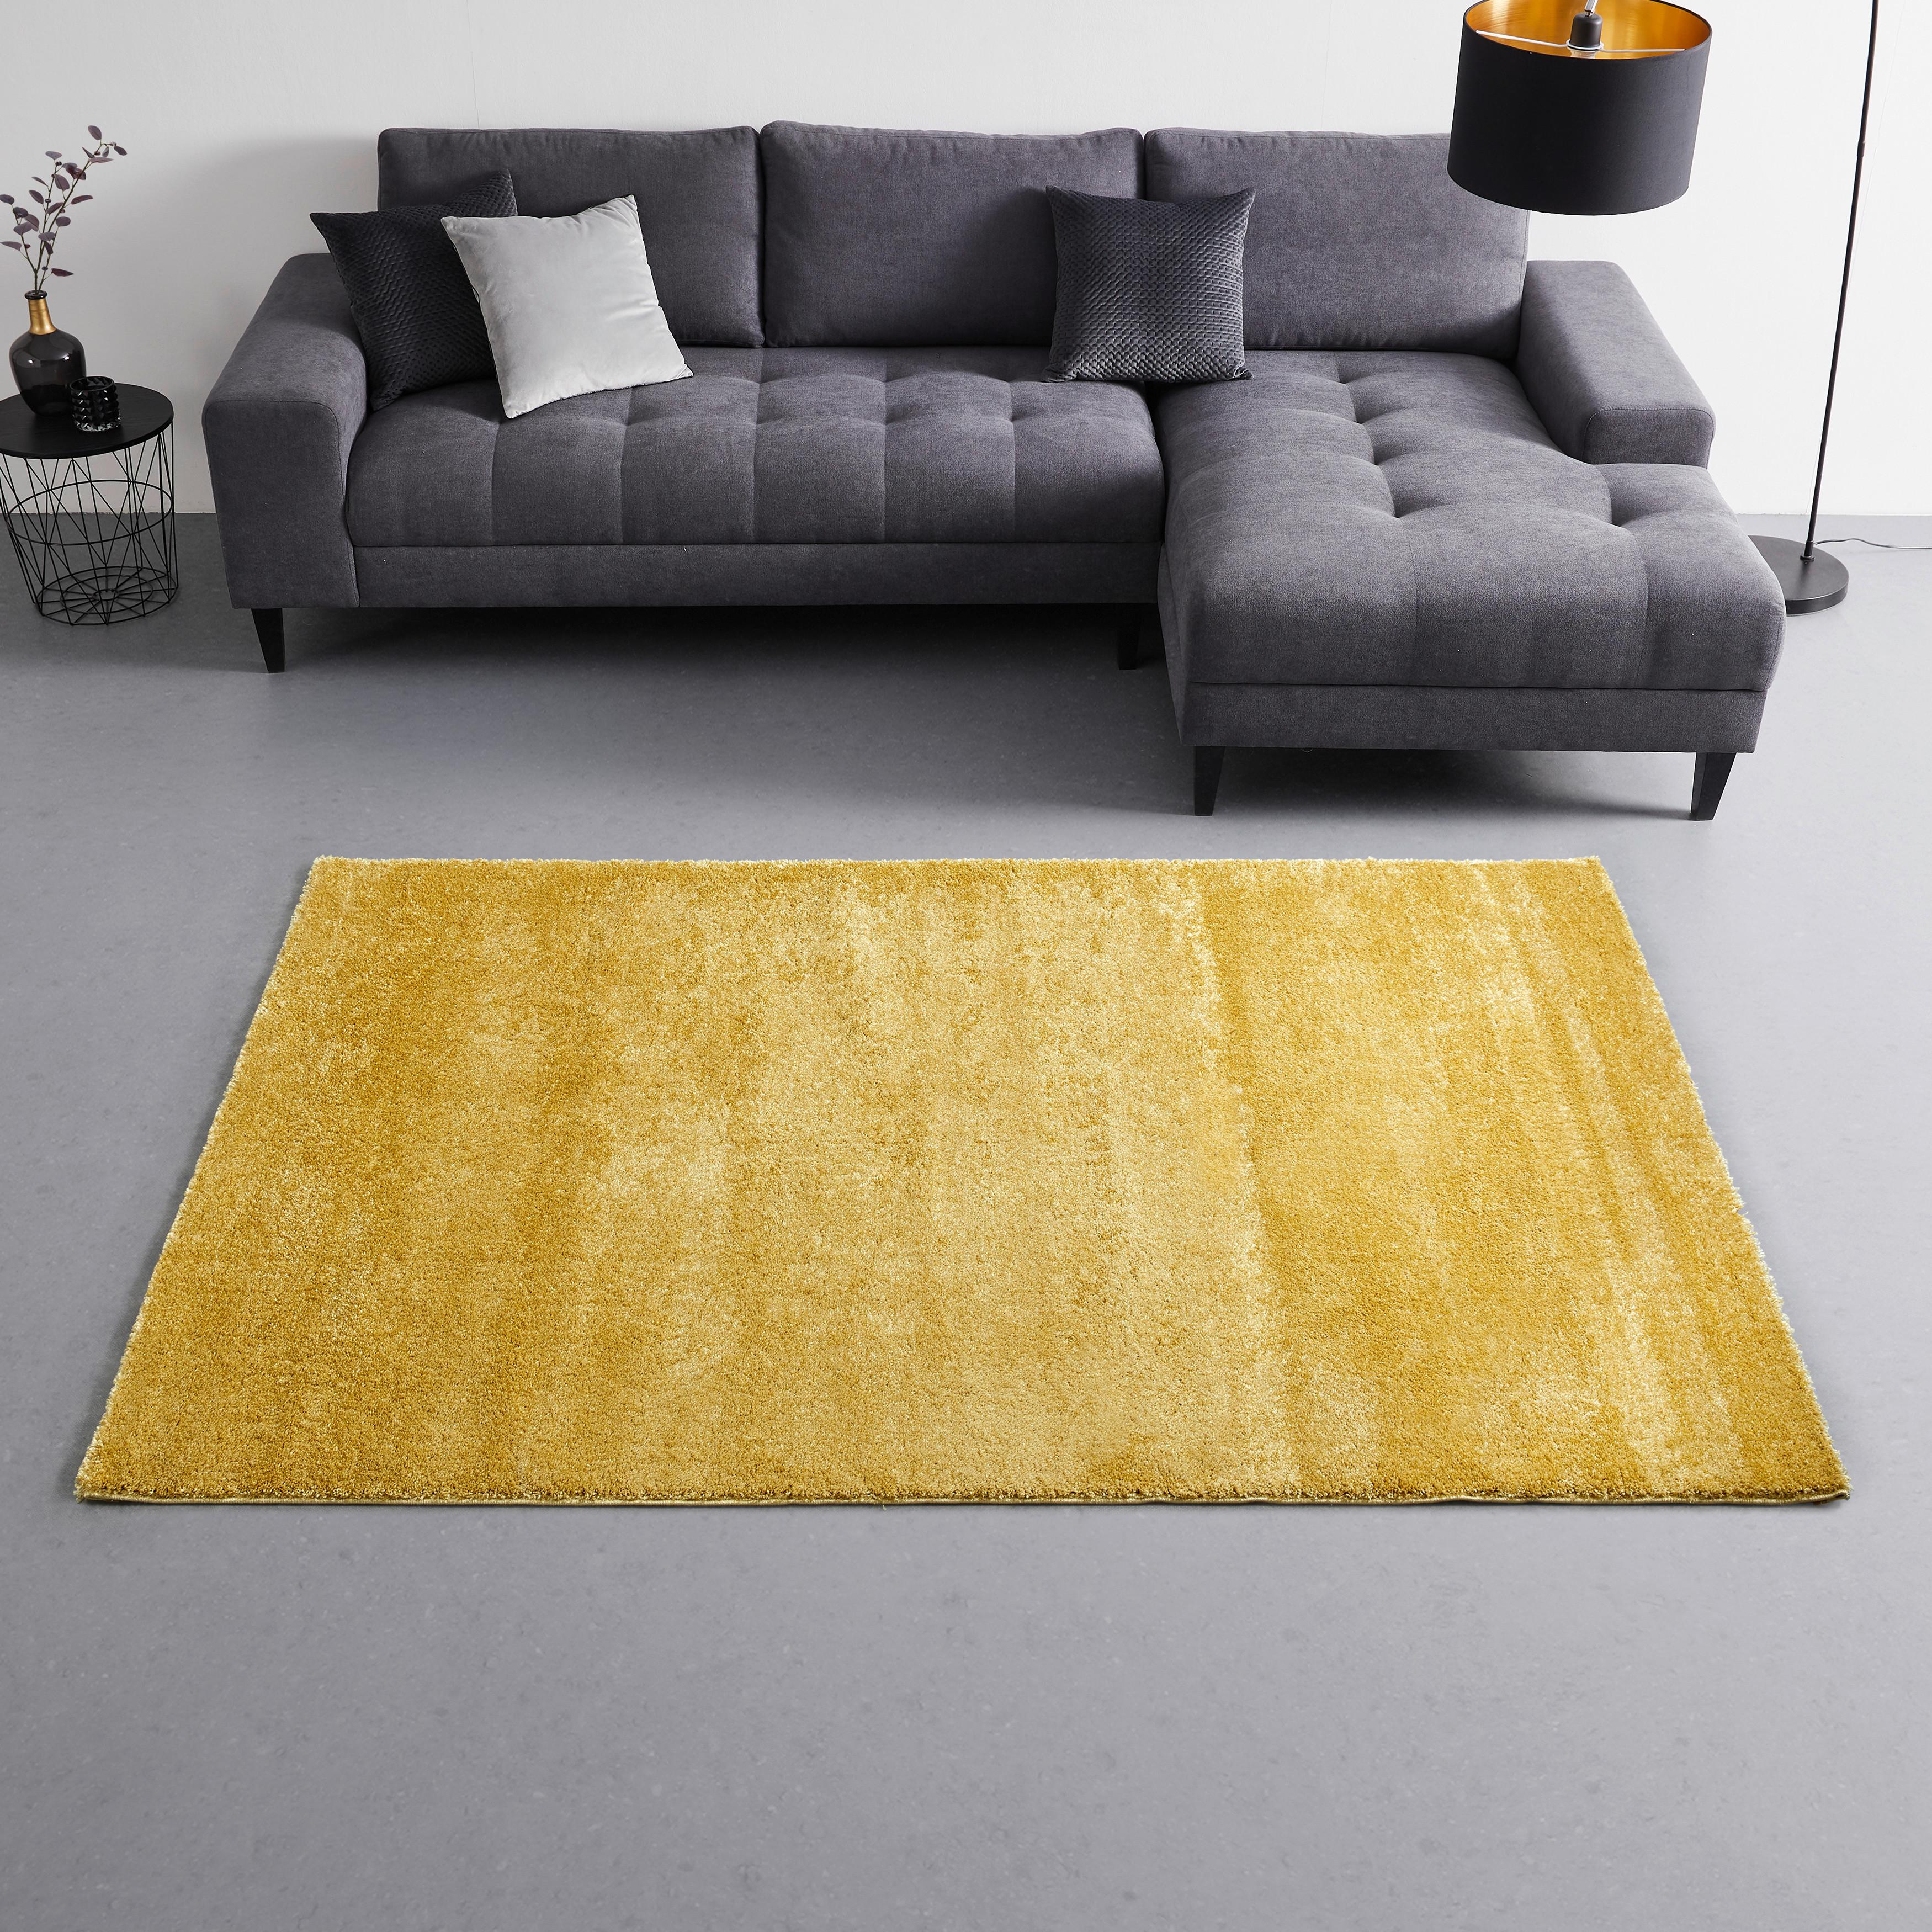 Szőtt Szőnyeg Rubin 1 - sárga, modern, textil (80/150cm) - Modern Living